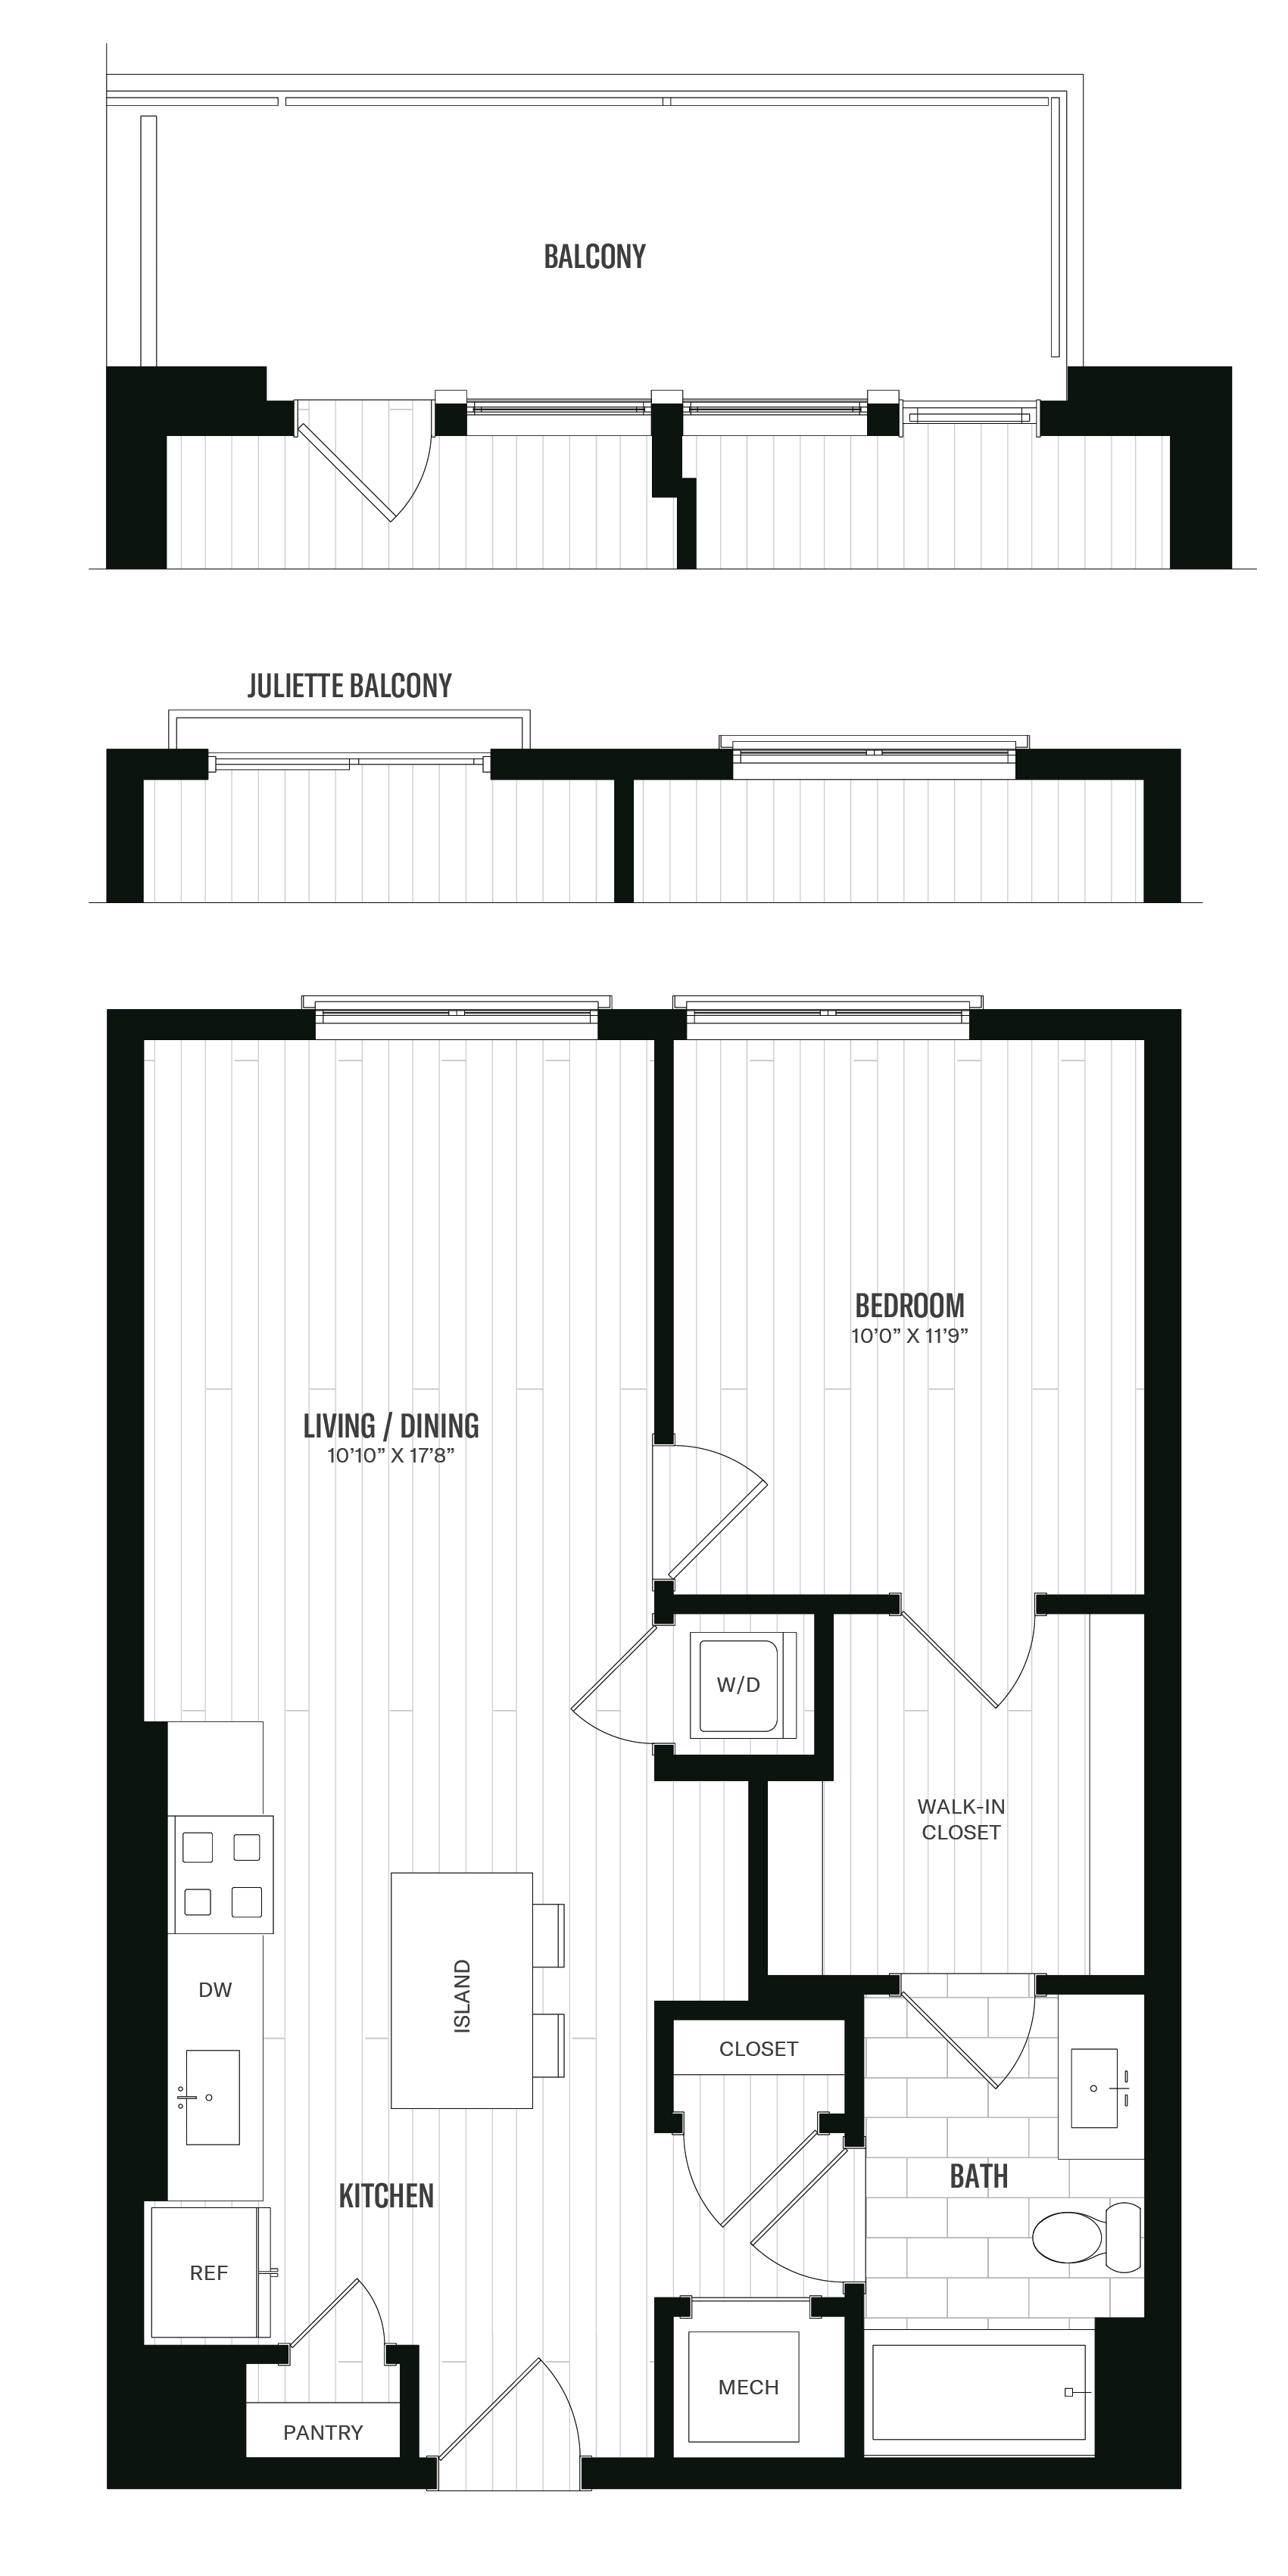 Floorplan image of unit 523